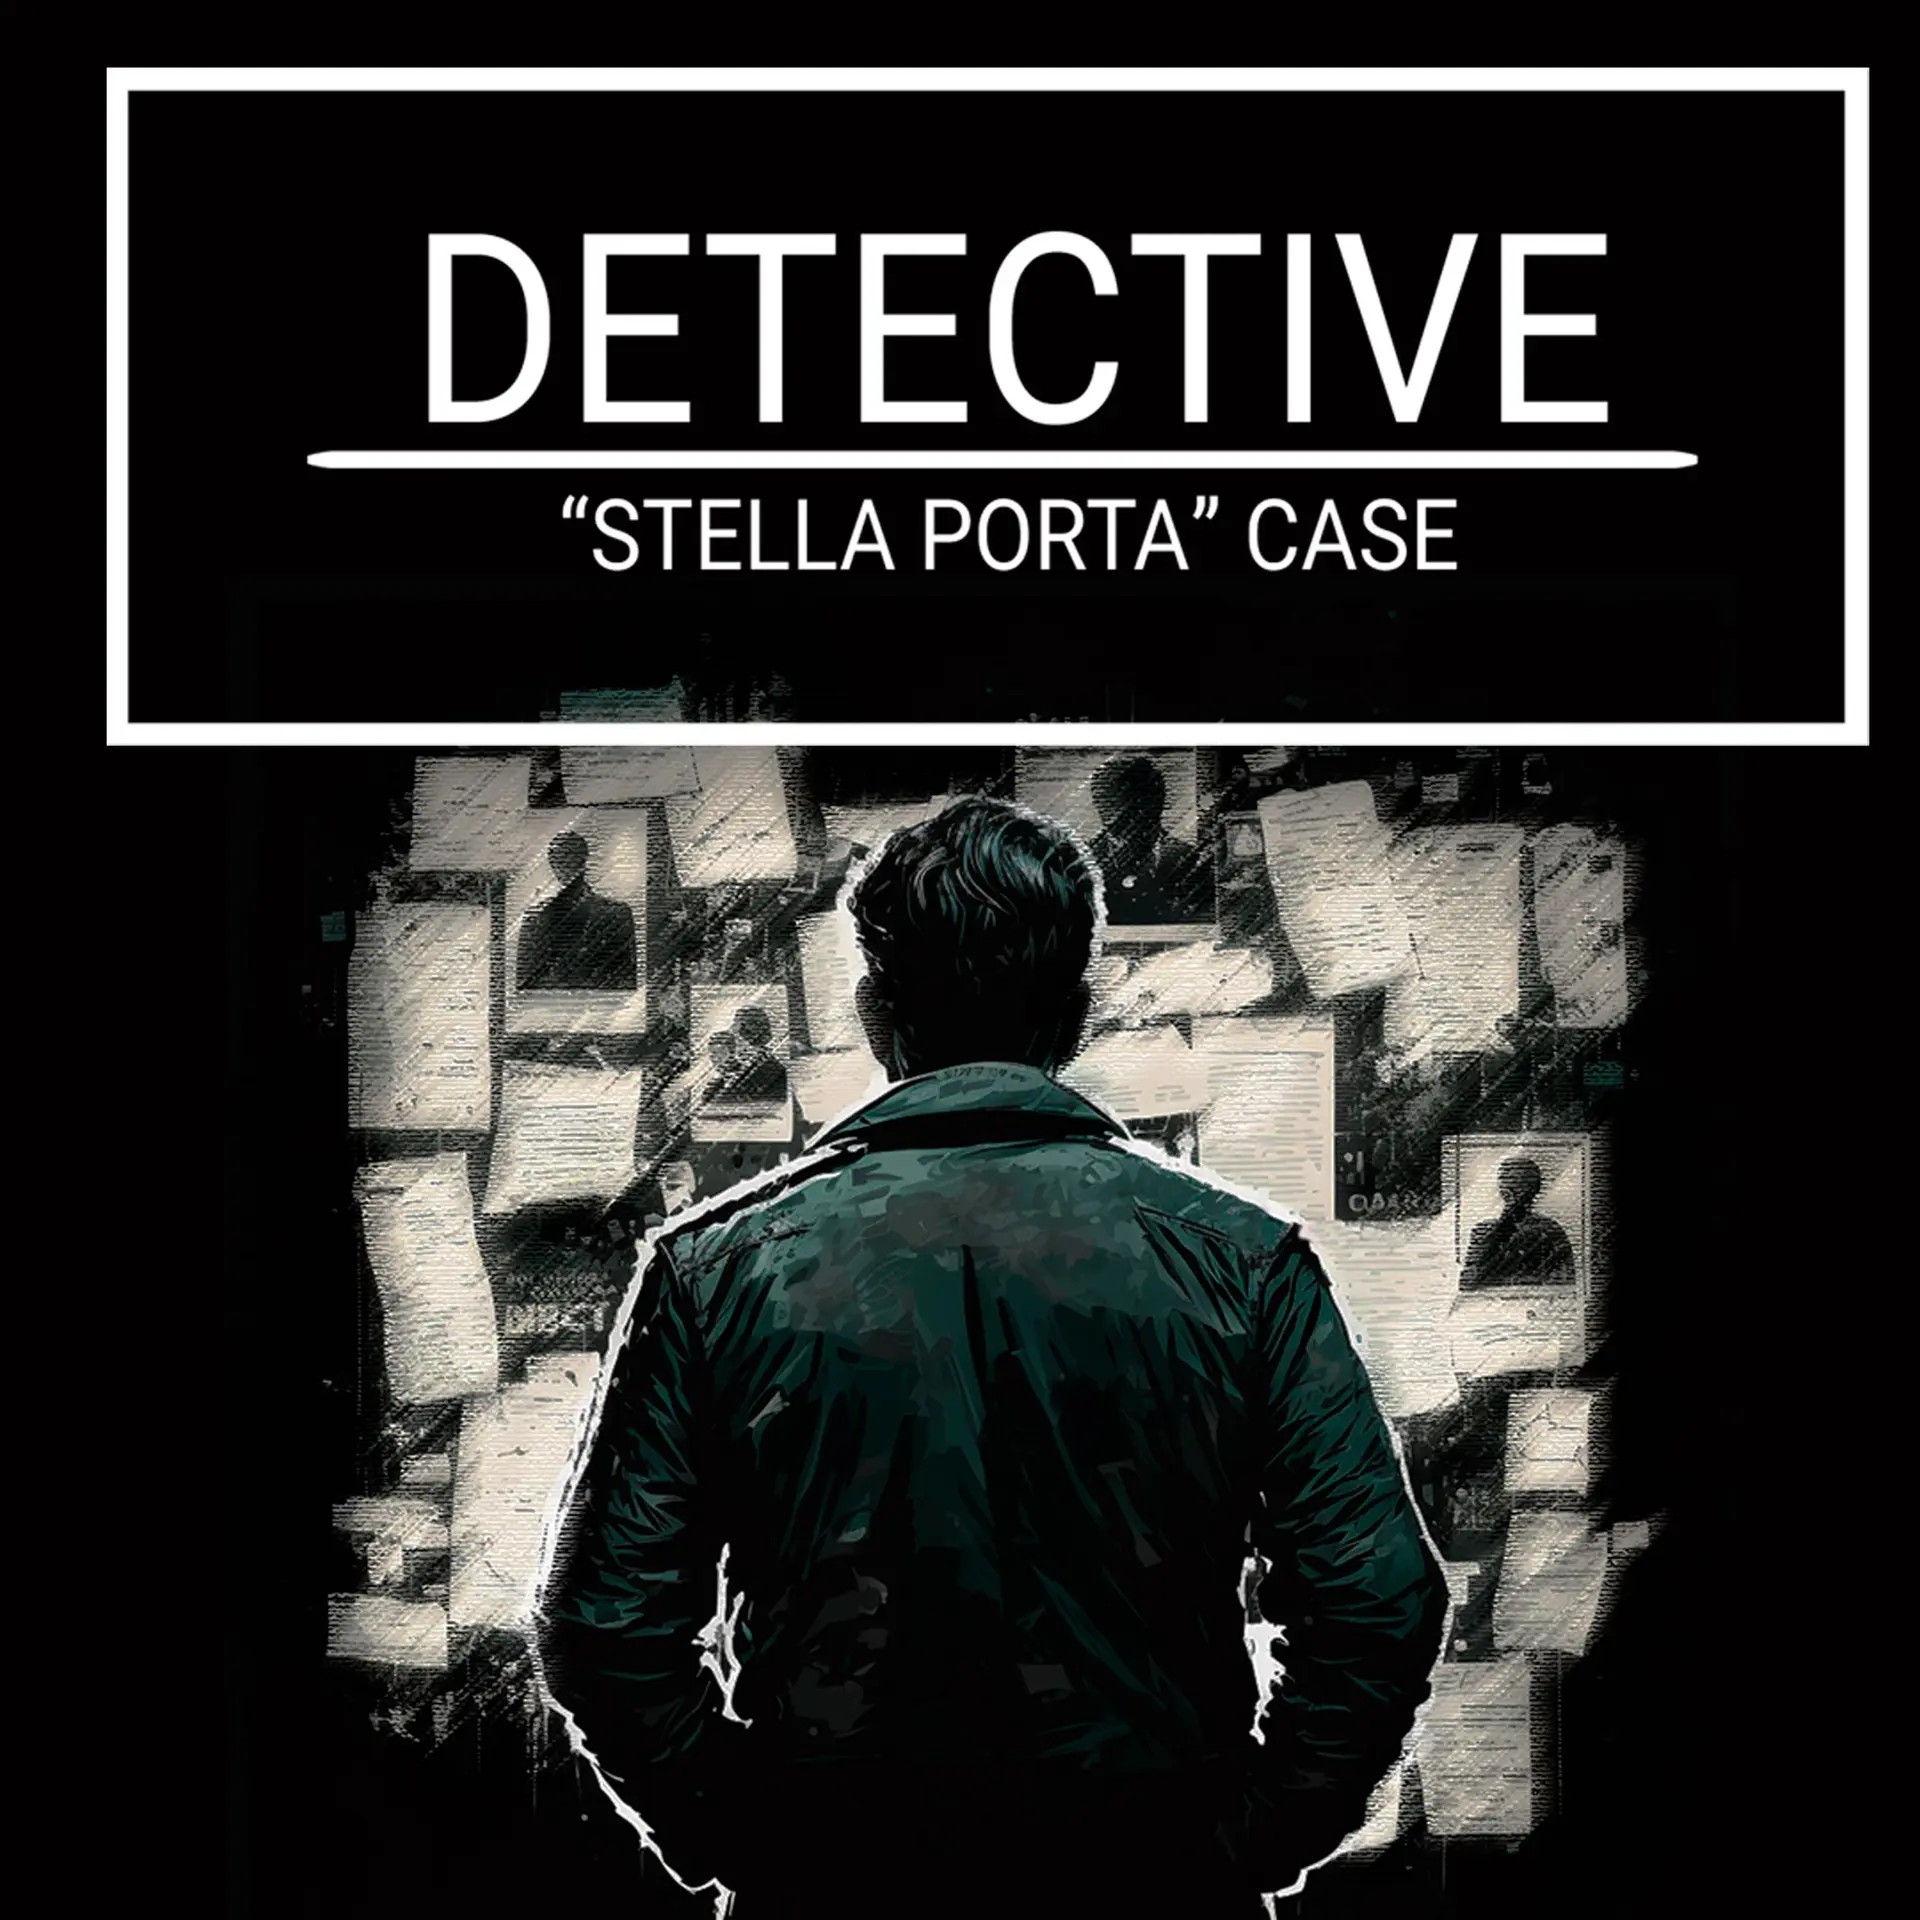 DETECTIVE - Stella Porta case (Xbox Games BR)